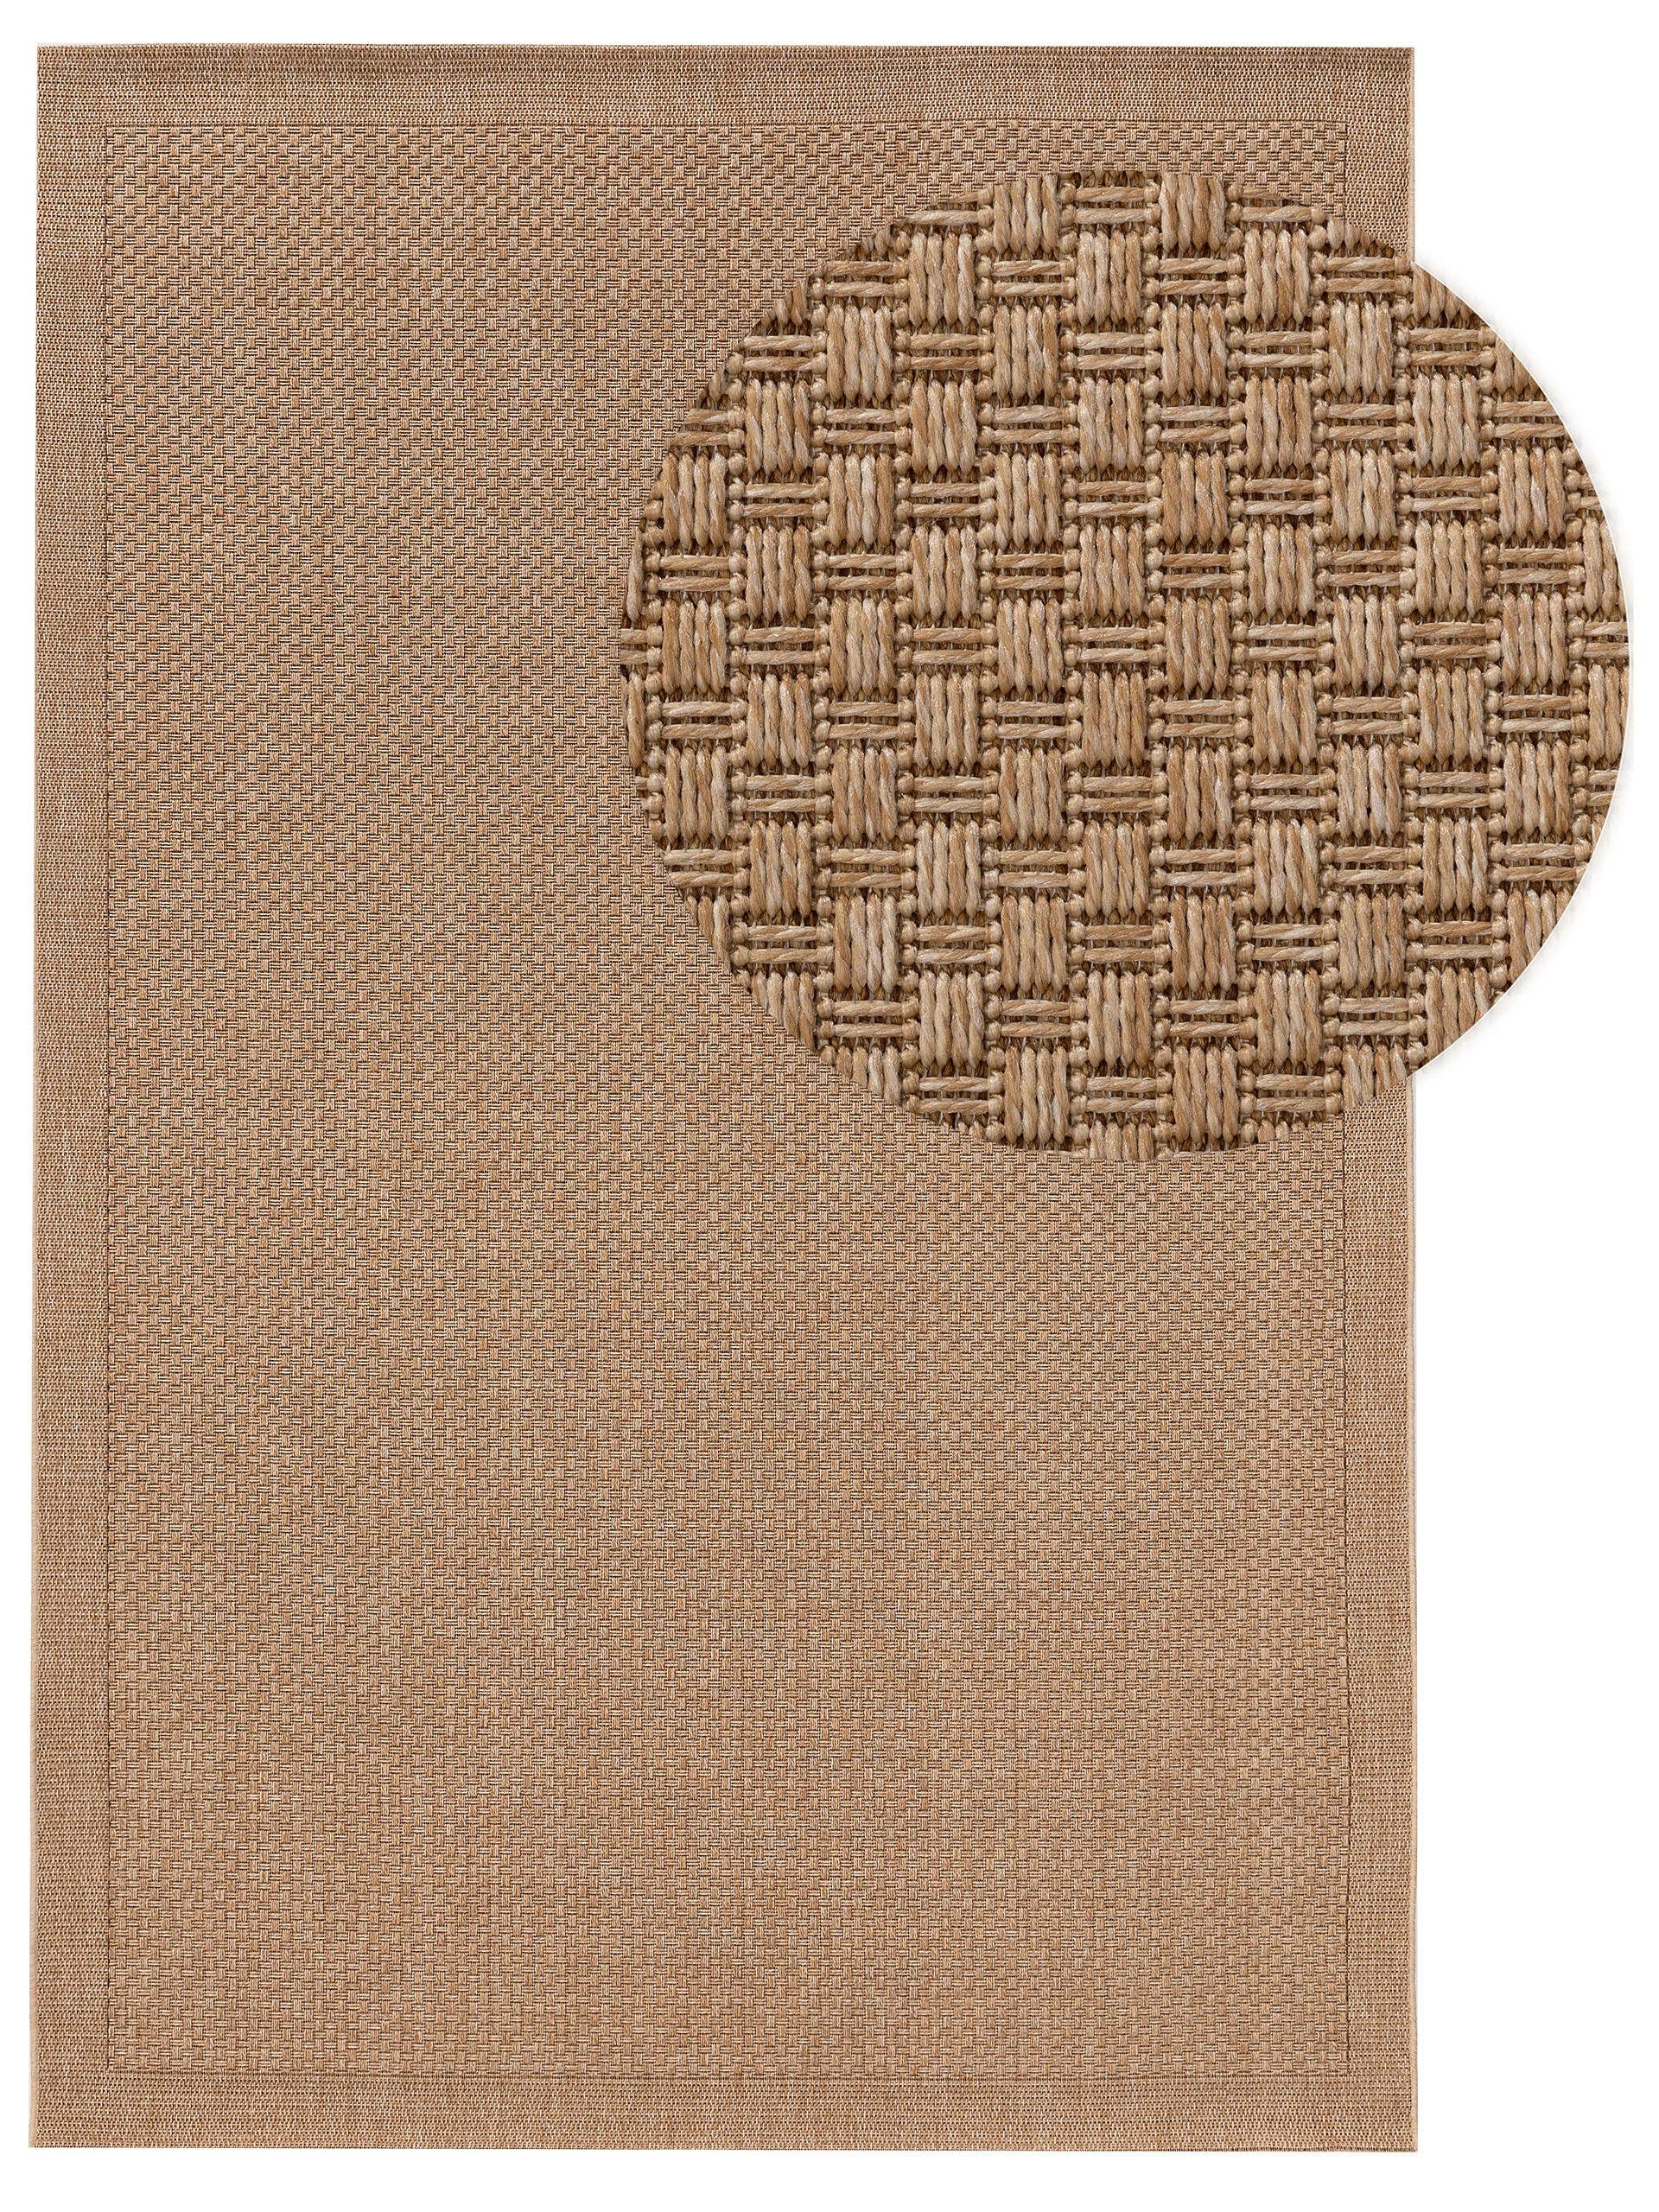 Der schöne minimalistische Outdoor Teppich Naoto in beige von Benuta ist aufgrund seiner Kunststofffaser sehr pflegeleicht und ideal für die Reise im Wohnwagen oder Wohnmobil | Jetzt kaufen bei Wildnest Glamping